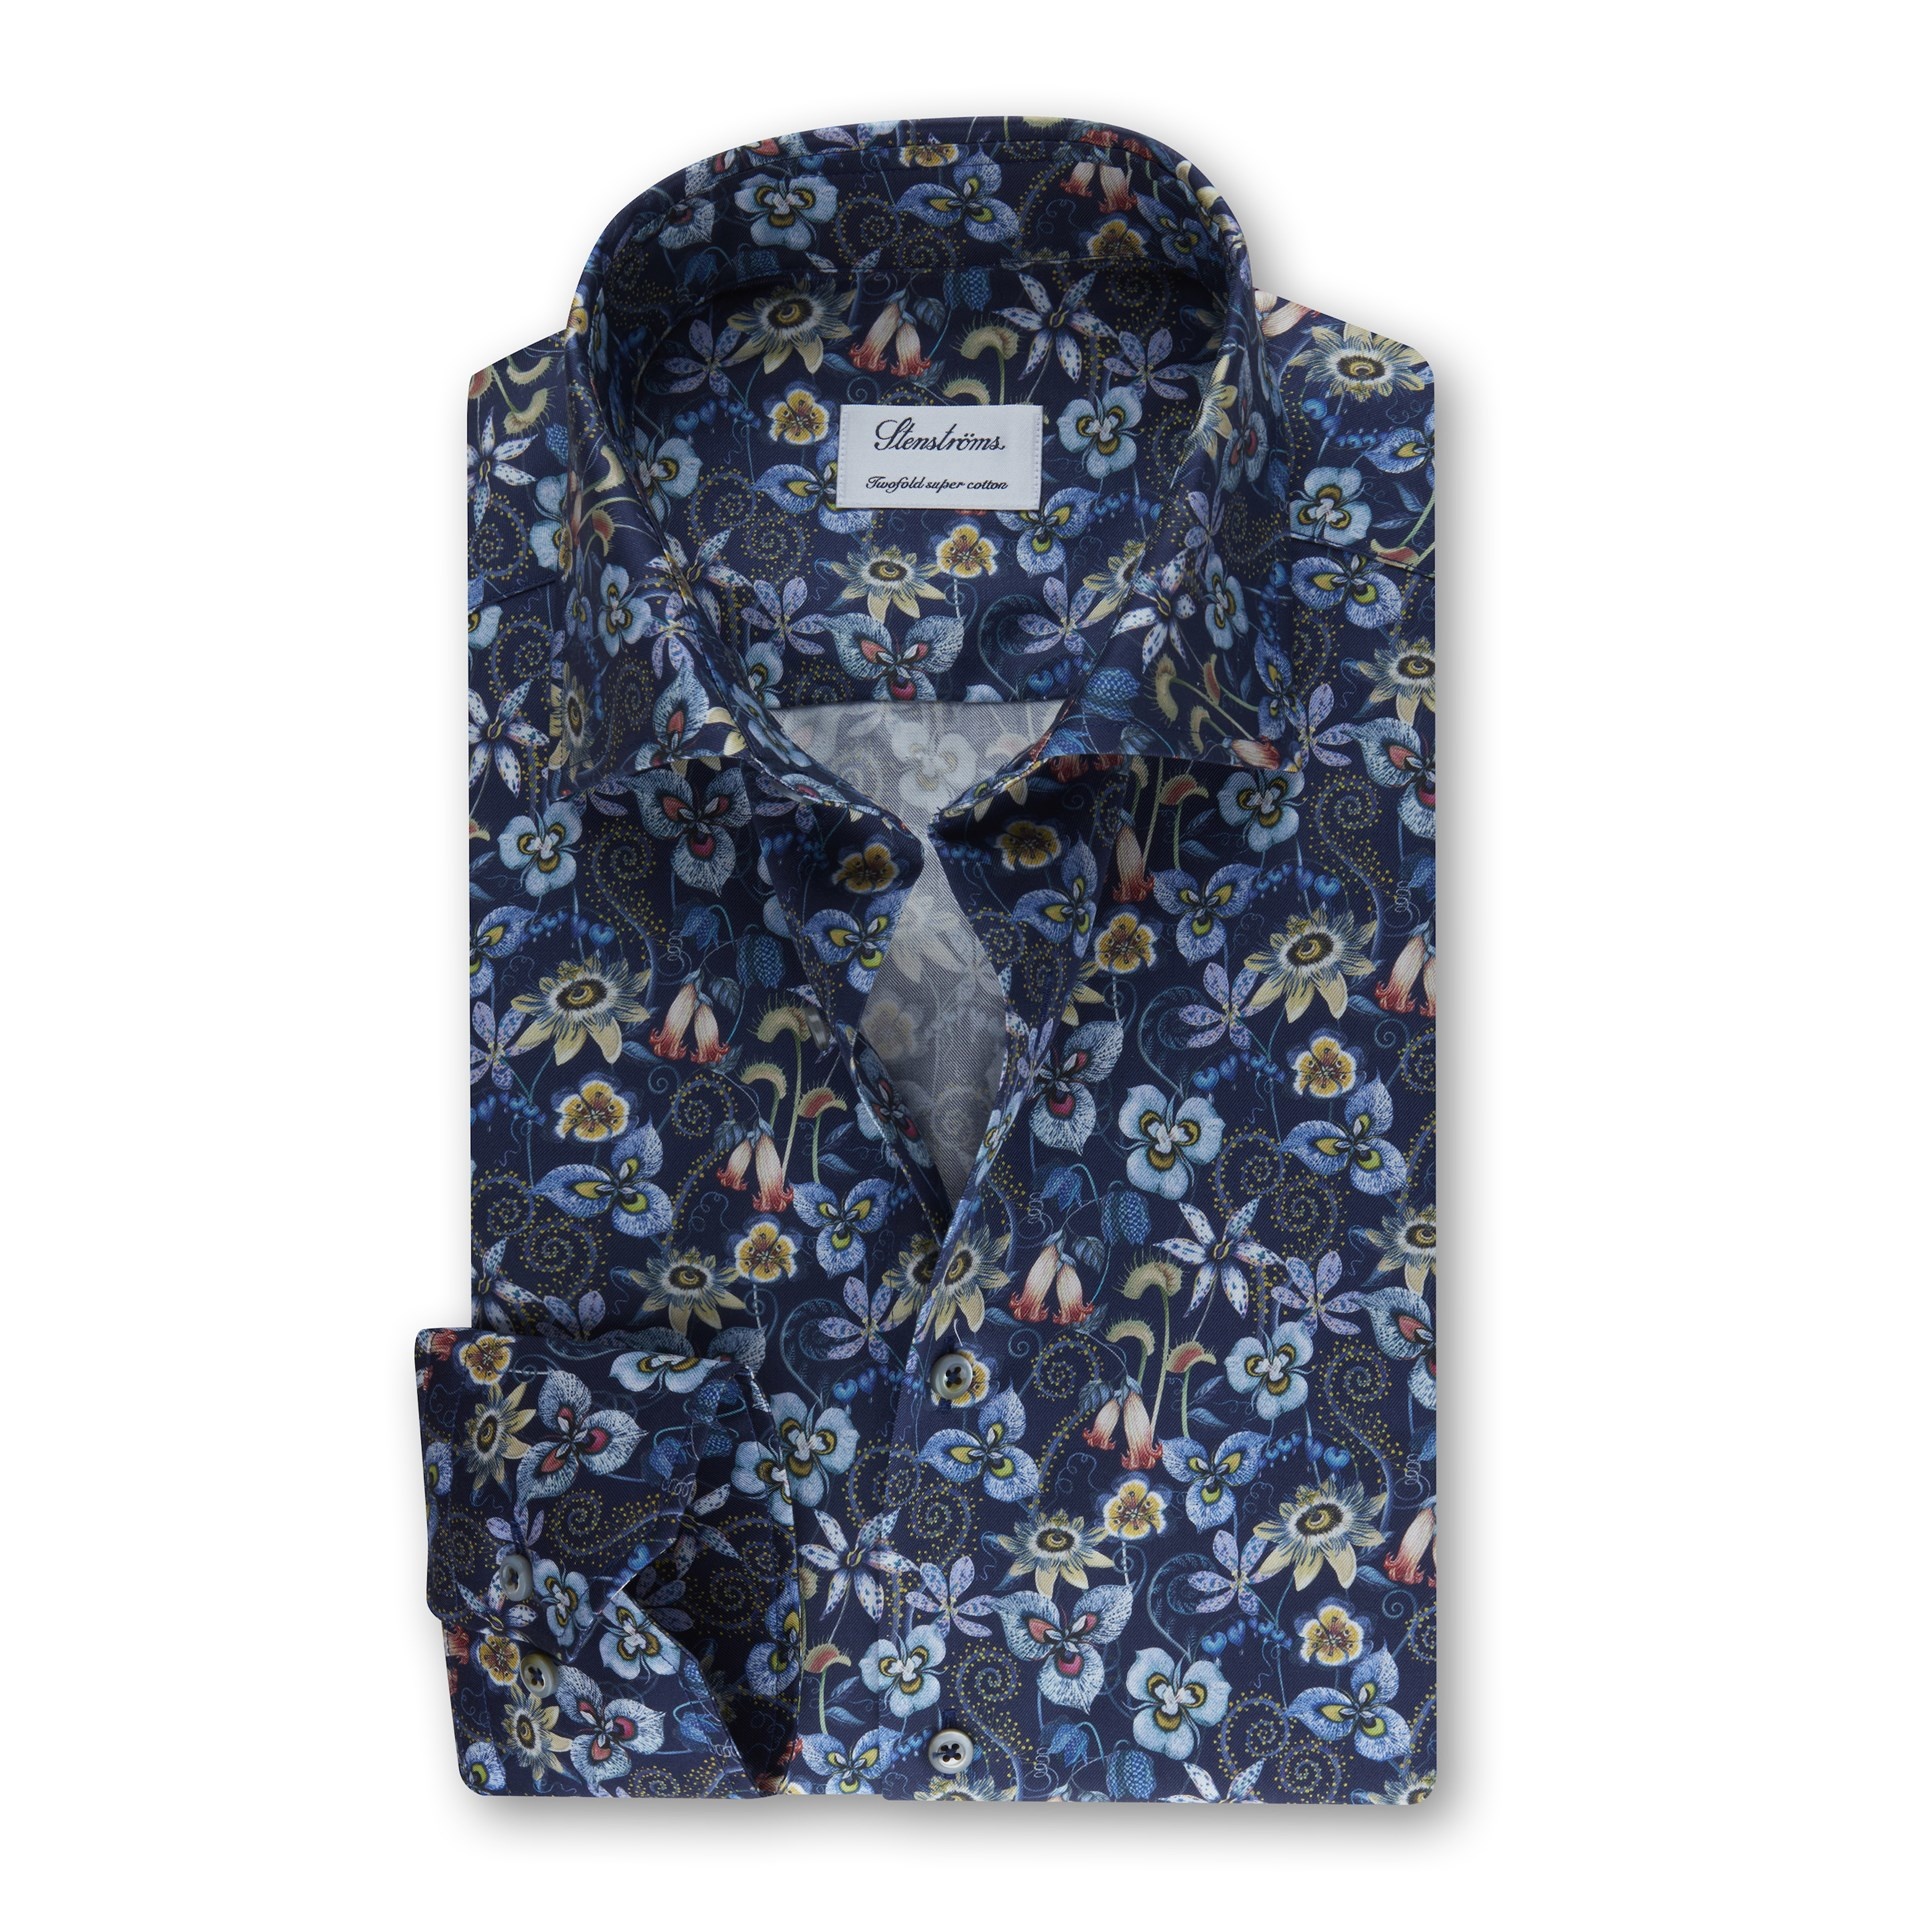 Stenstroms Navy Floral Luxury Twill shirt